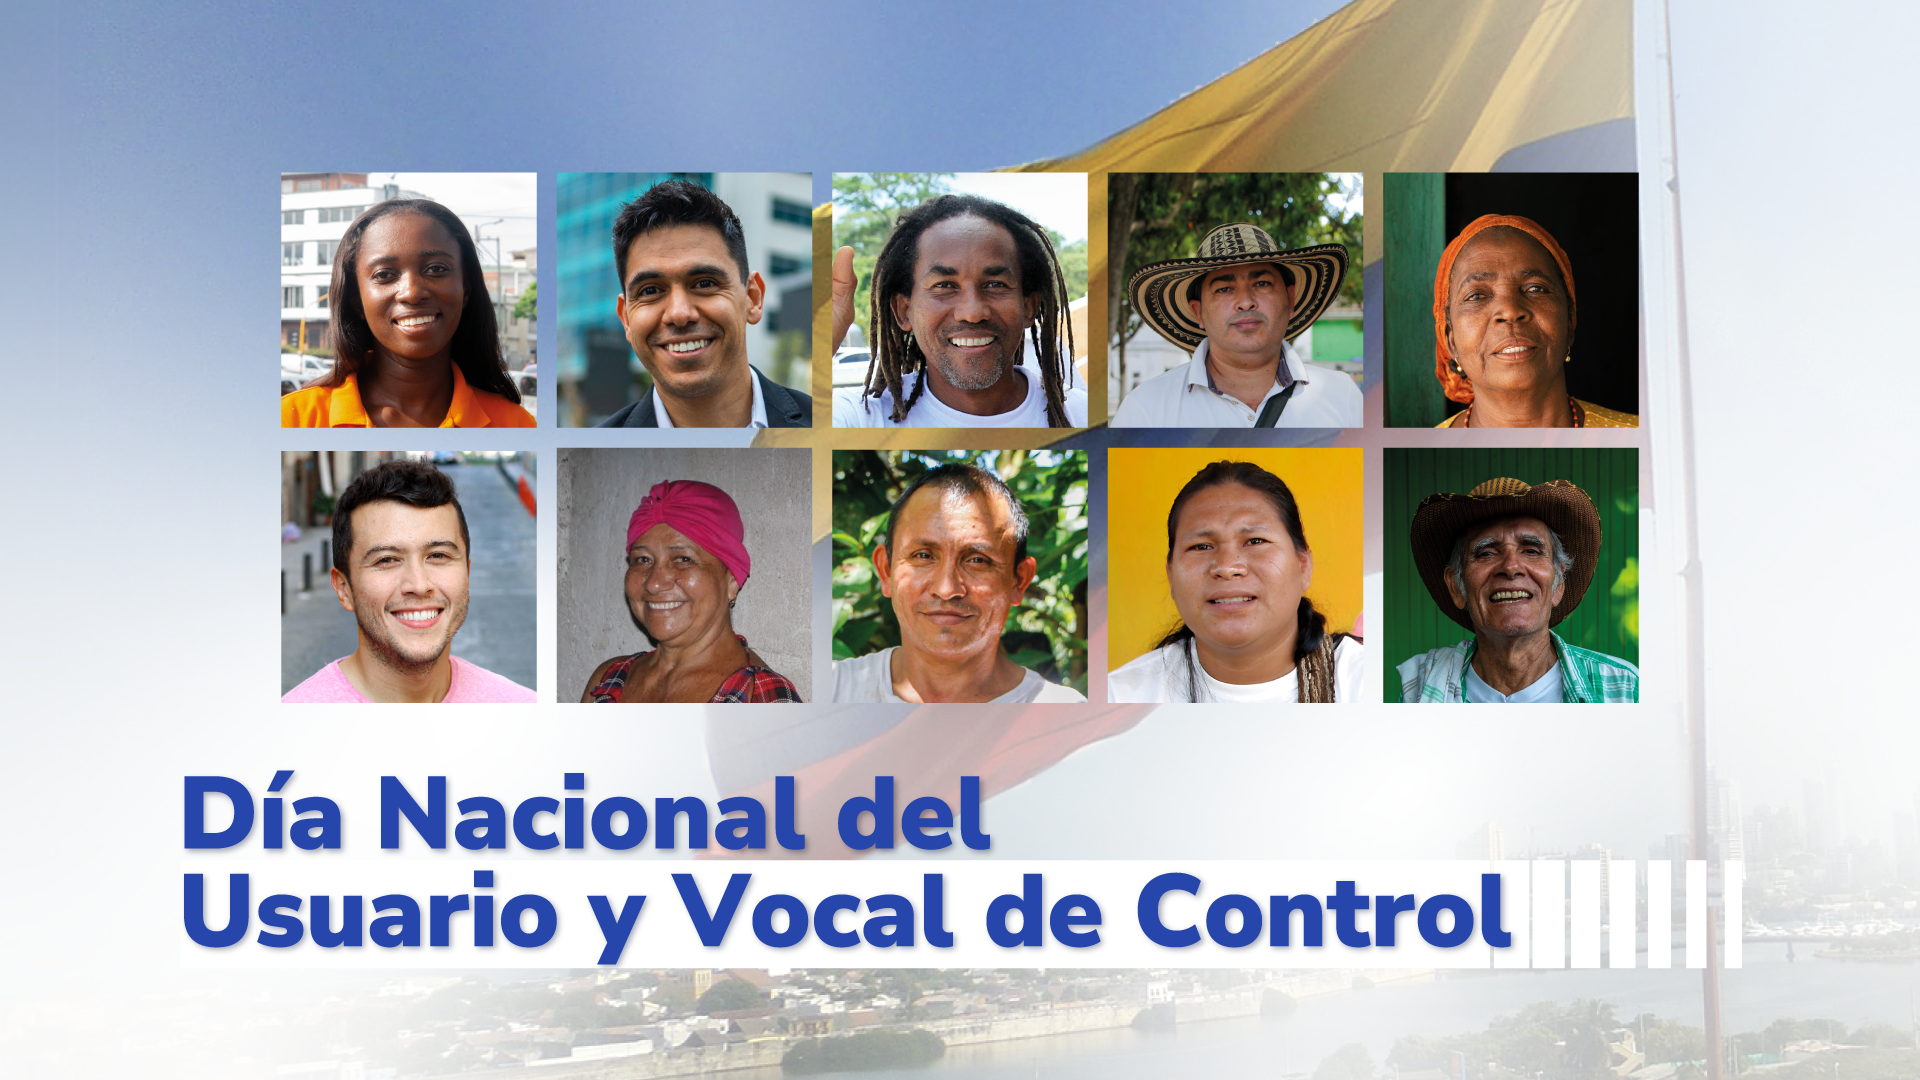 Día Nacional del Usuario y Vocal de Control
